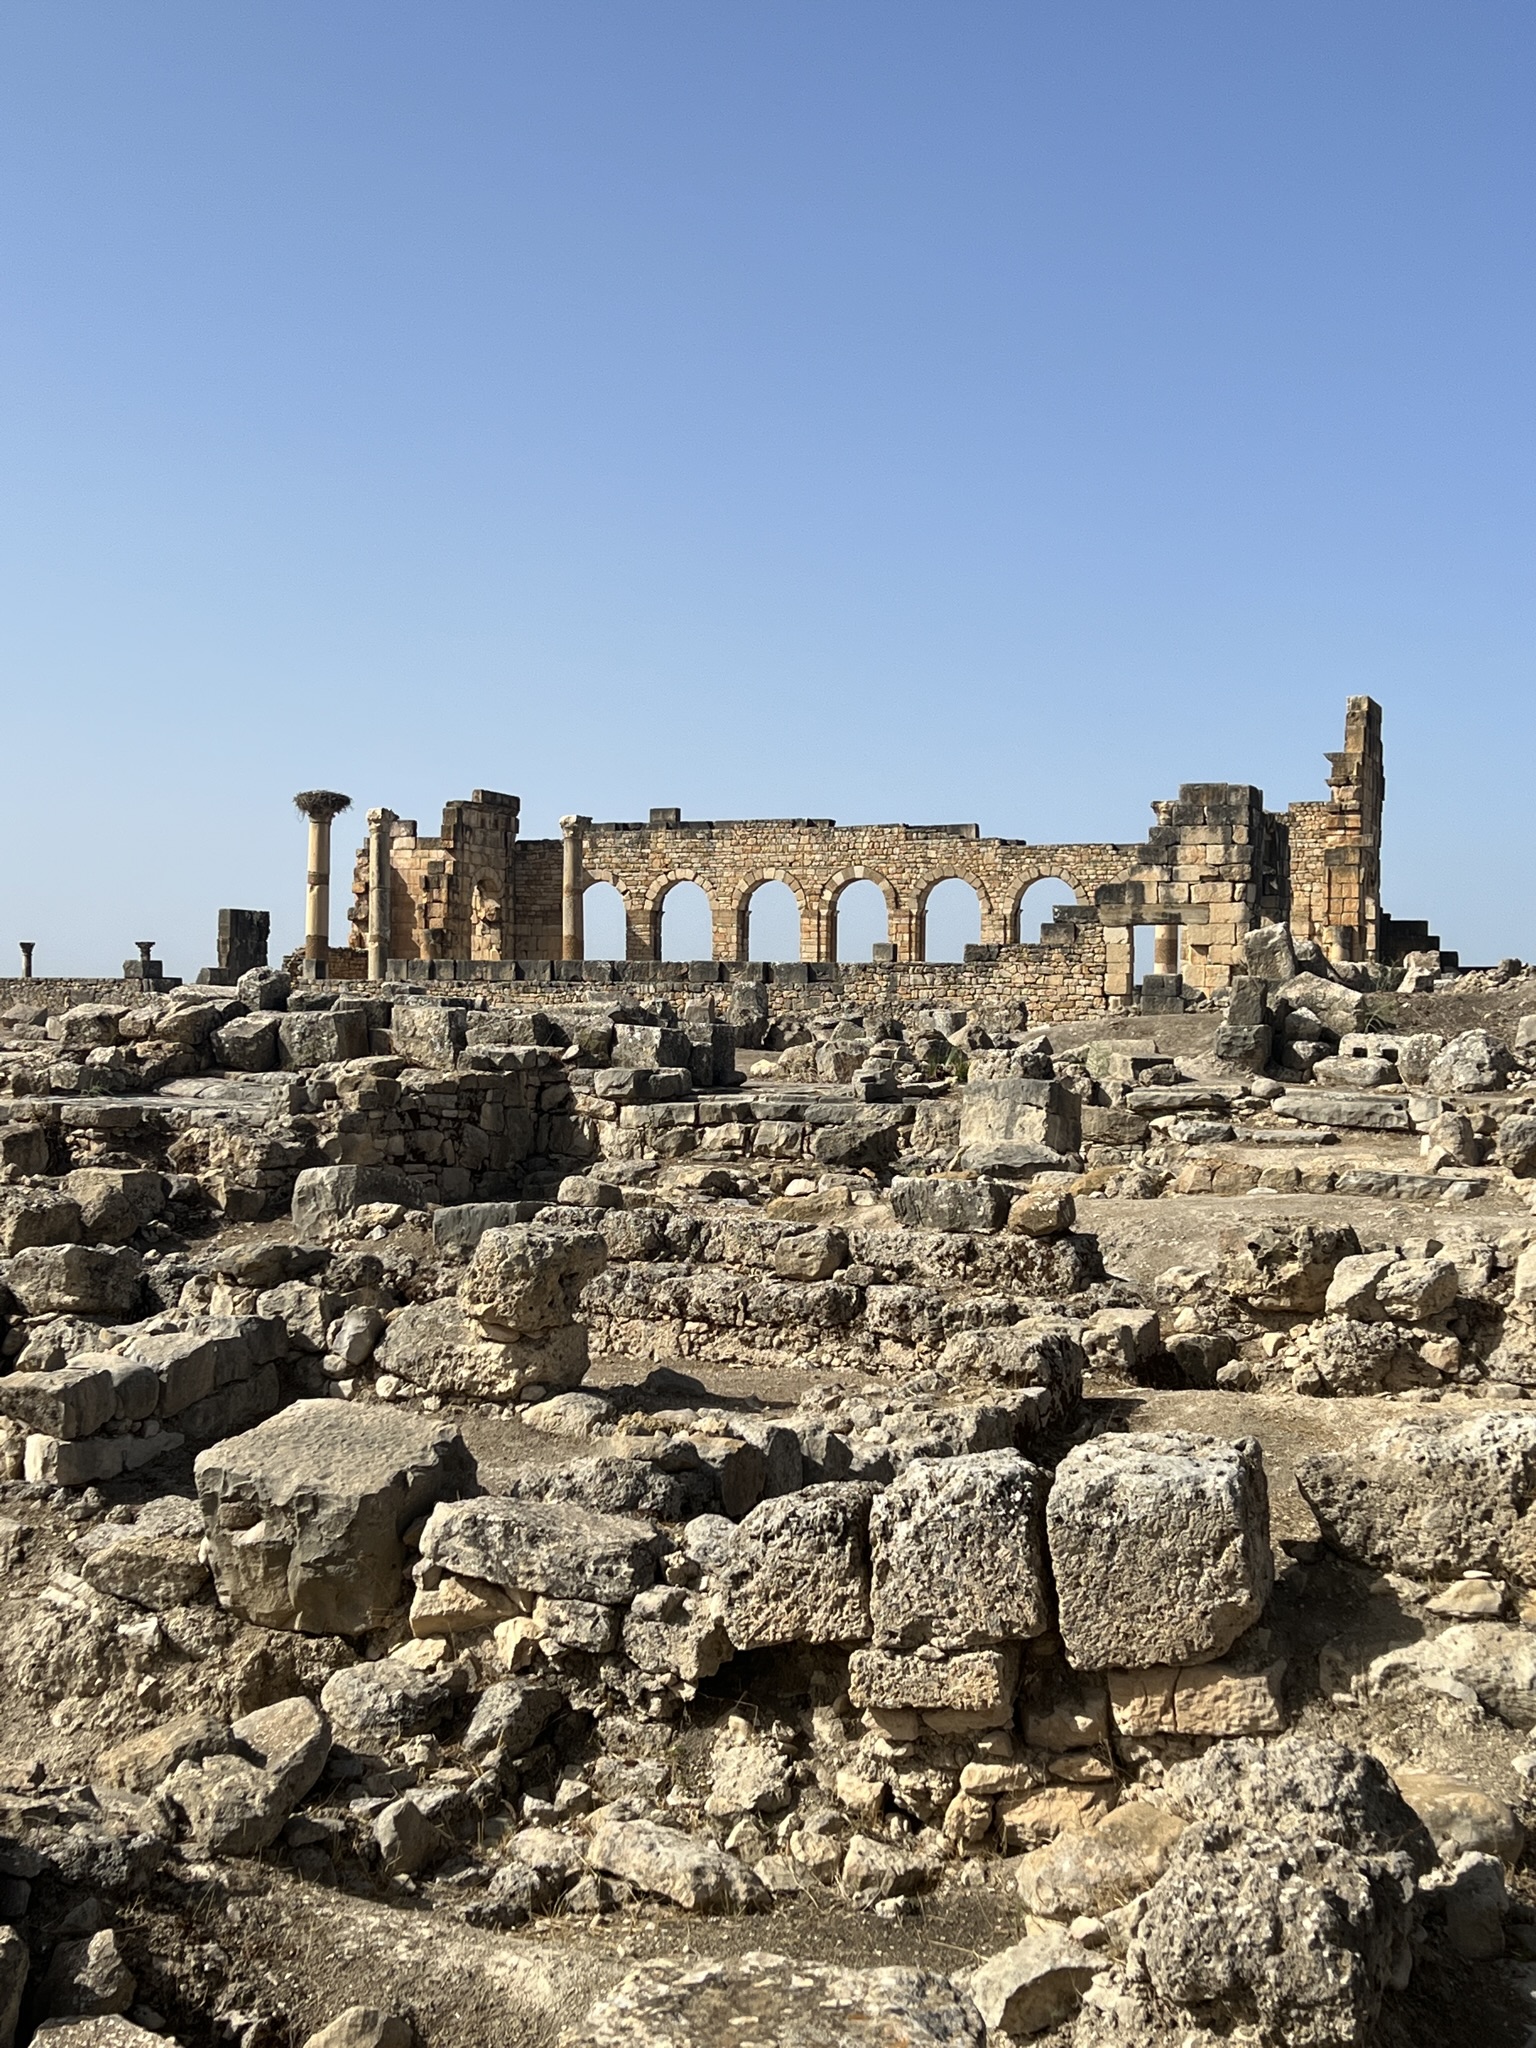 Volubilis (UNESCO world heritage) - partly excavated Roman city, Meknes, Morocco.